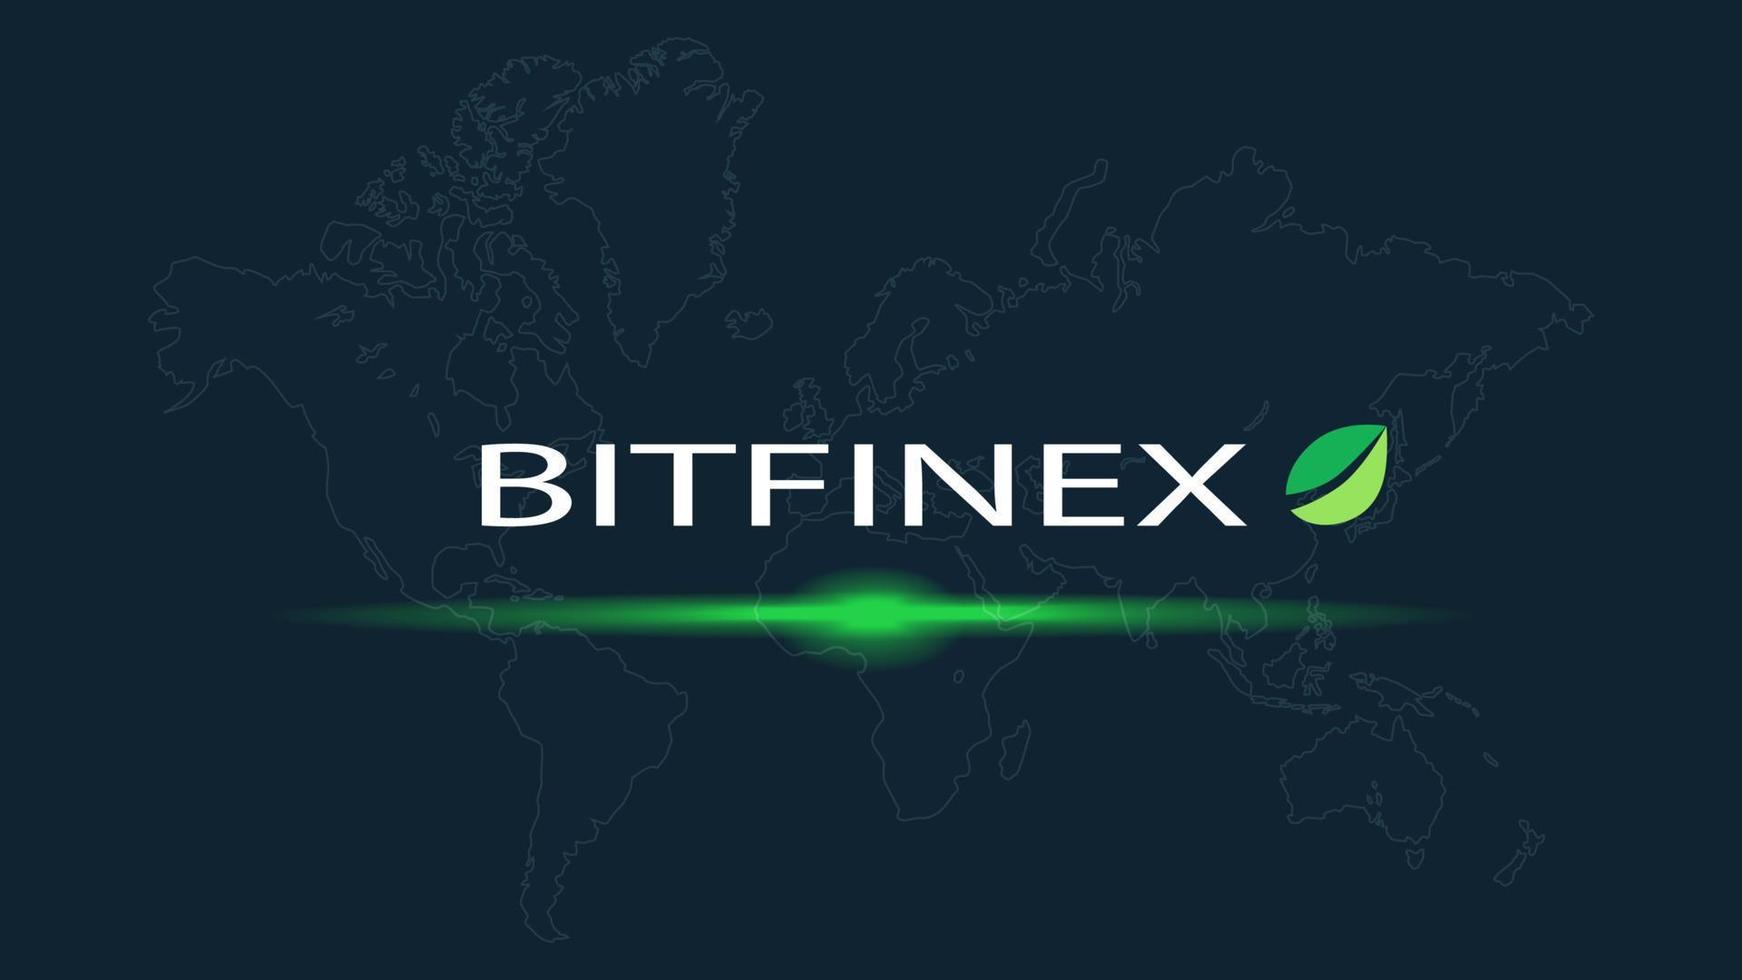 nome do mercado de ações de criptomoeda bitfinex com logotipo em fundo digital abstrato. bolsa de valores cripto para notícias e mídia. vetor eps10.